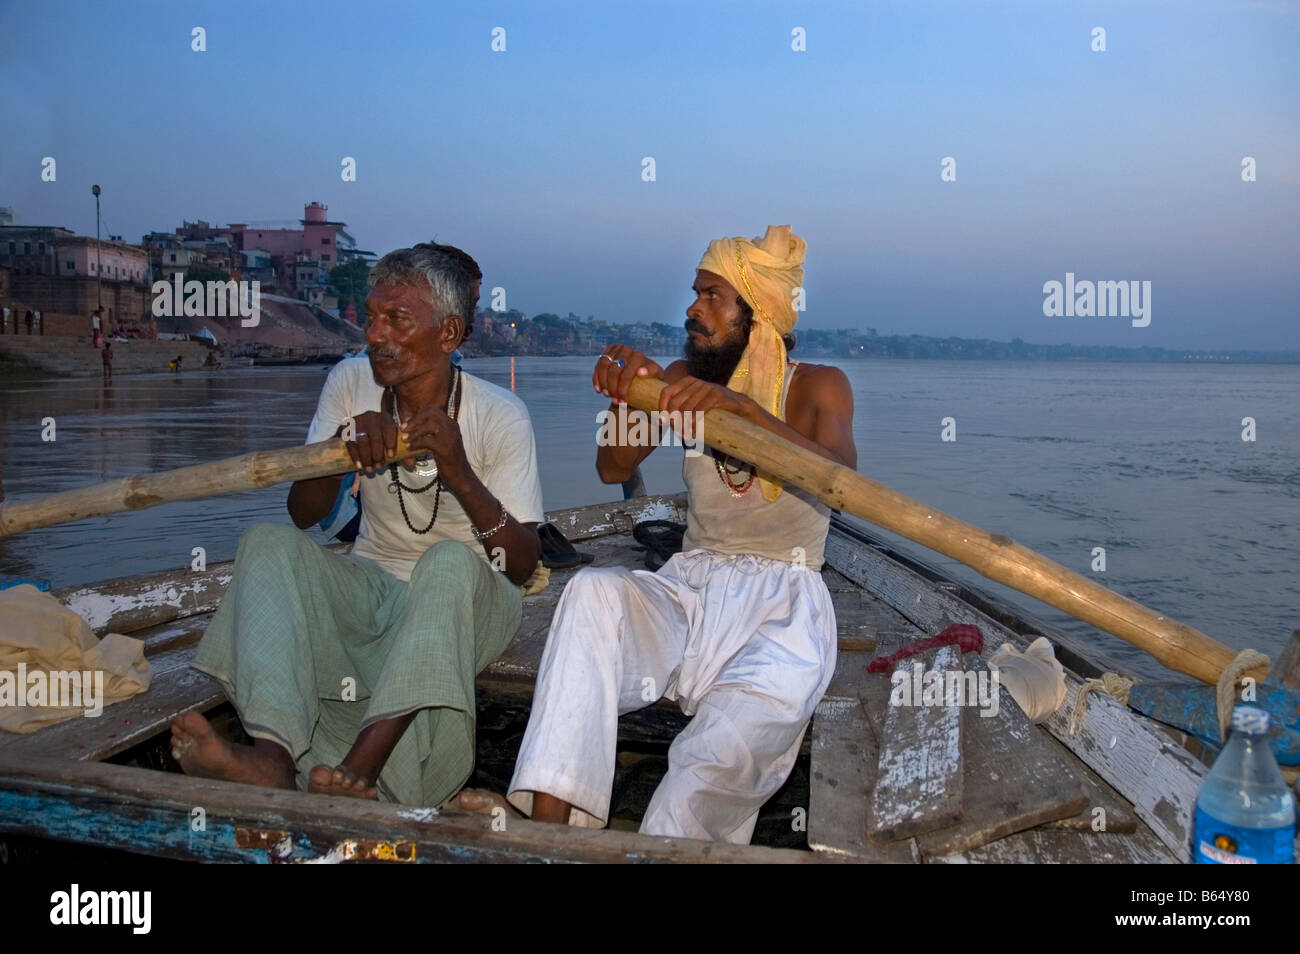 Ligne bateliers Bateau de tourisme au petit matin tour des ghats sur le Gange à Varanasi Inde Banque D'Images